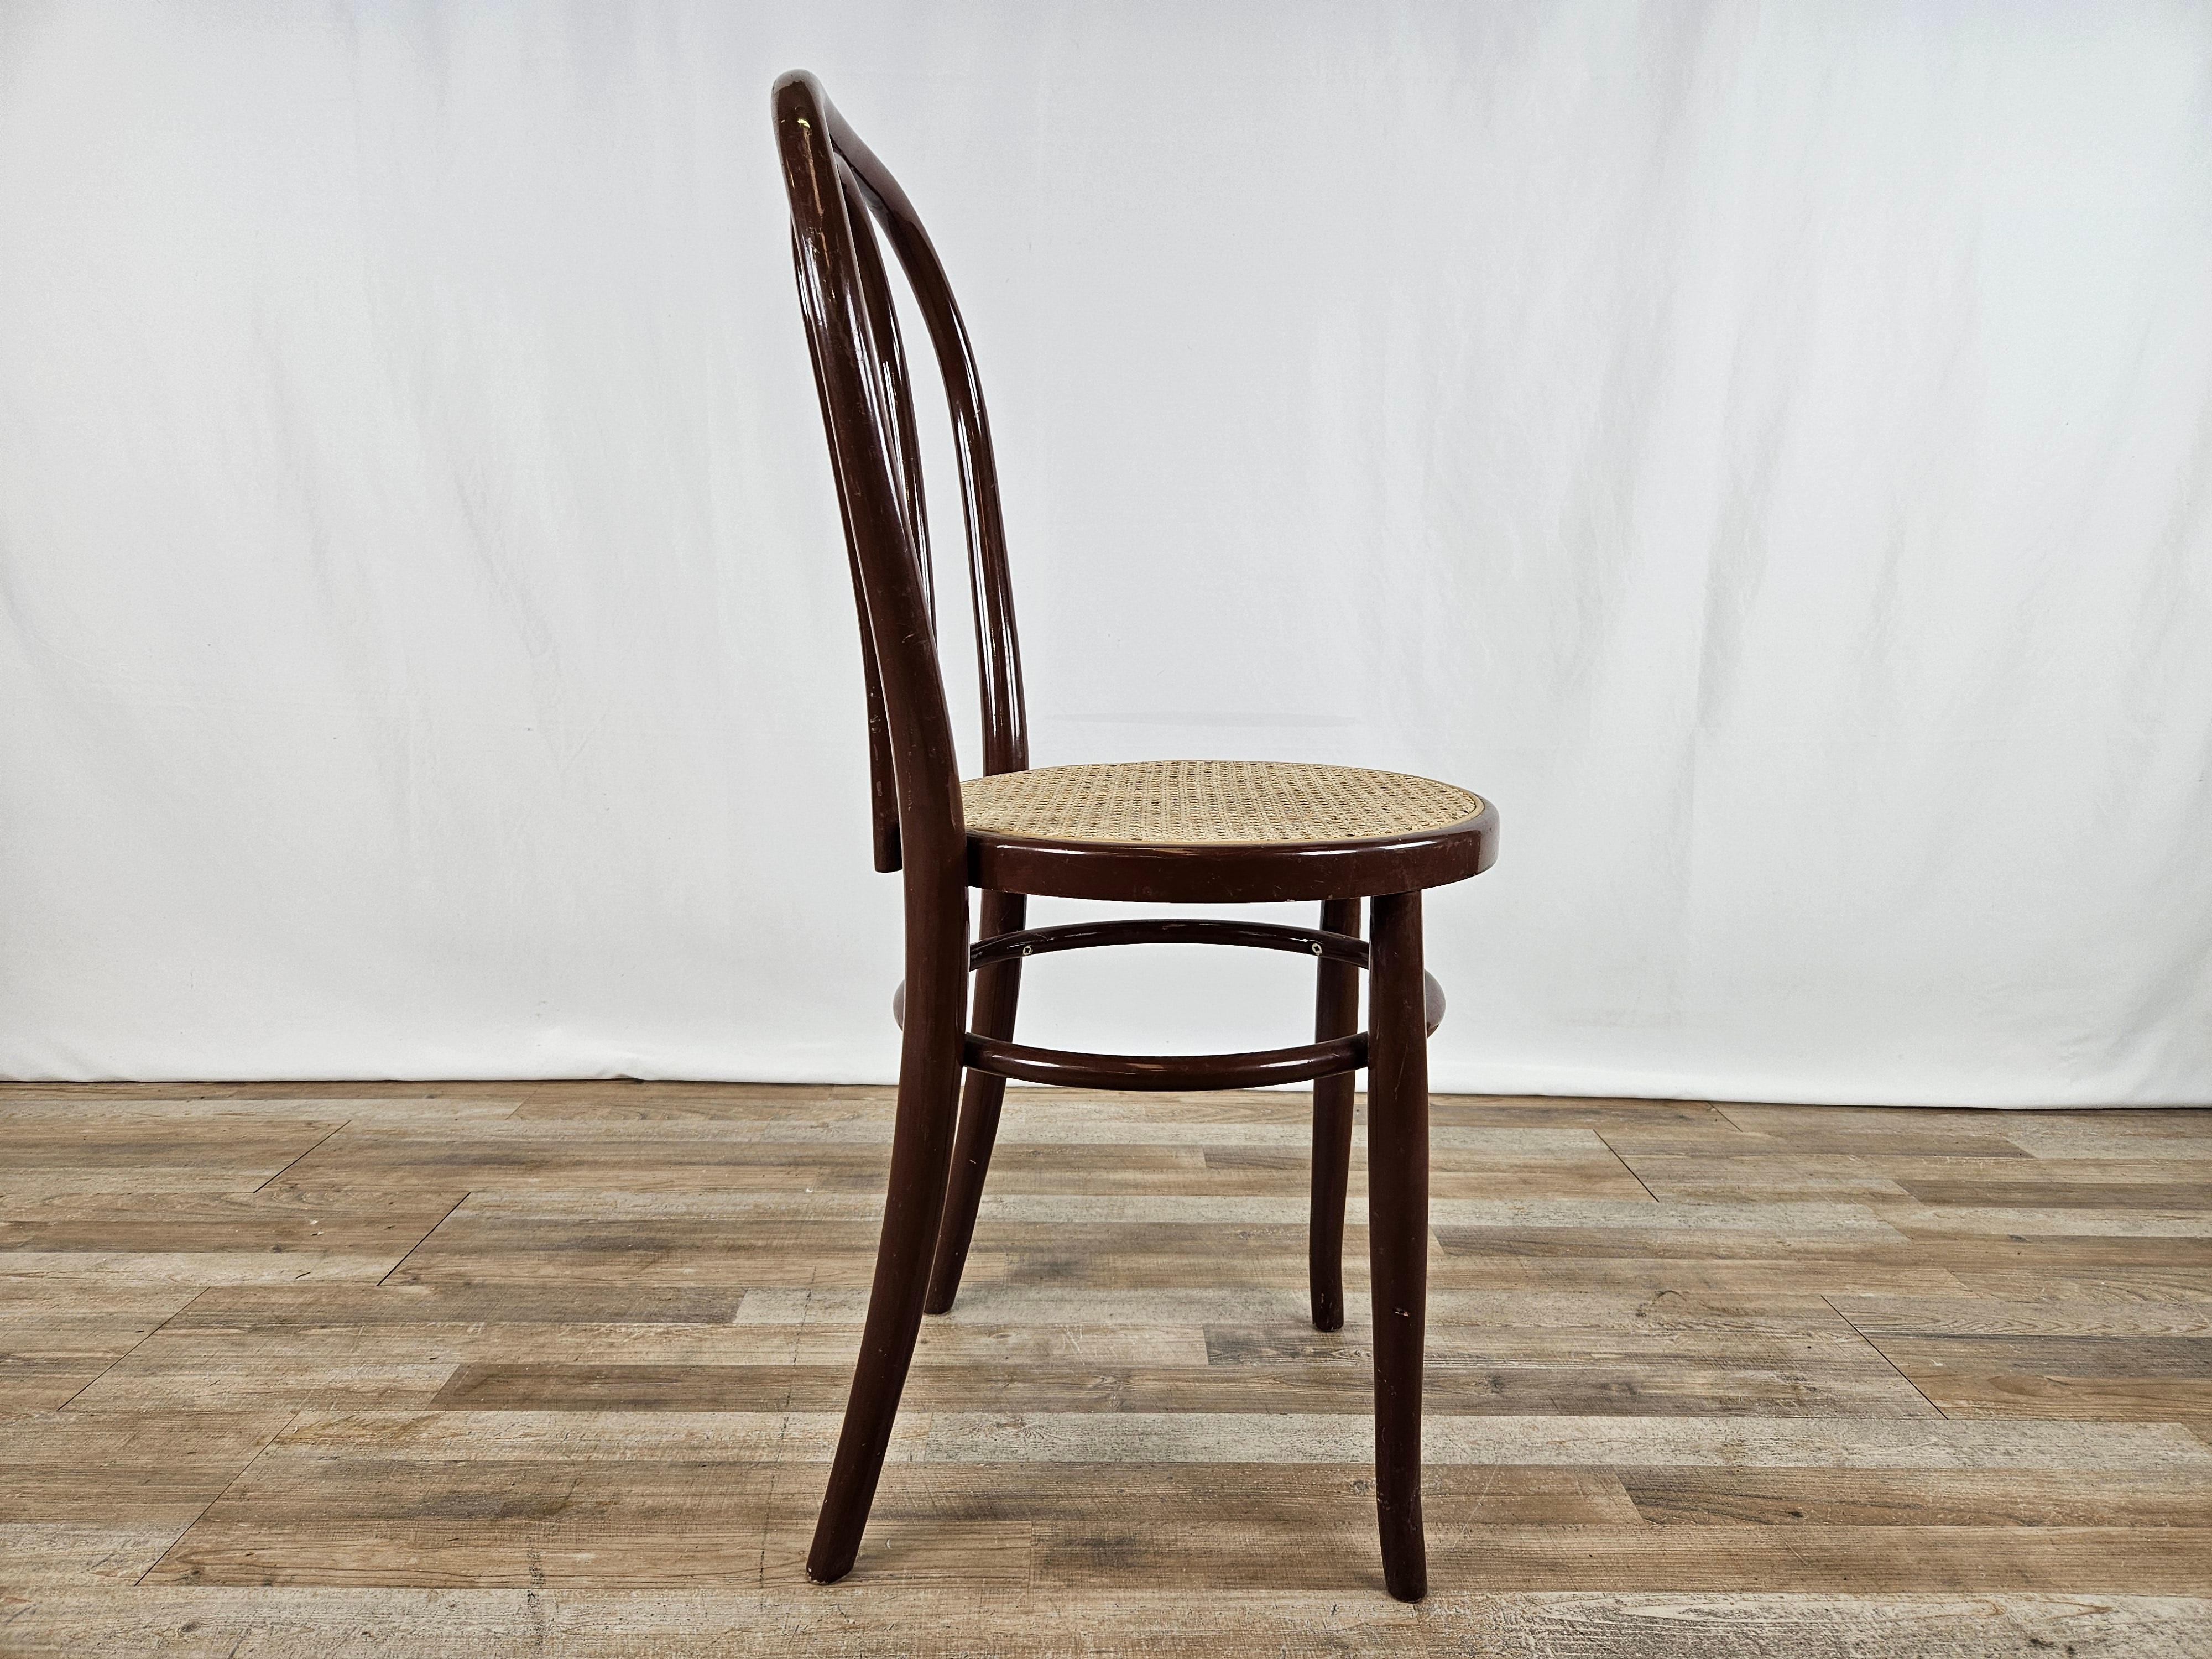 Braun lackierter Holzstuhl mit Sitz aus Wiener Stroh.

Ideal für Küchen, Büros, Wohnräume oder als Möbelelemente.

Normale alters- und gebrauchsbedingte Gebrauchsspuren.